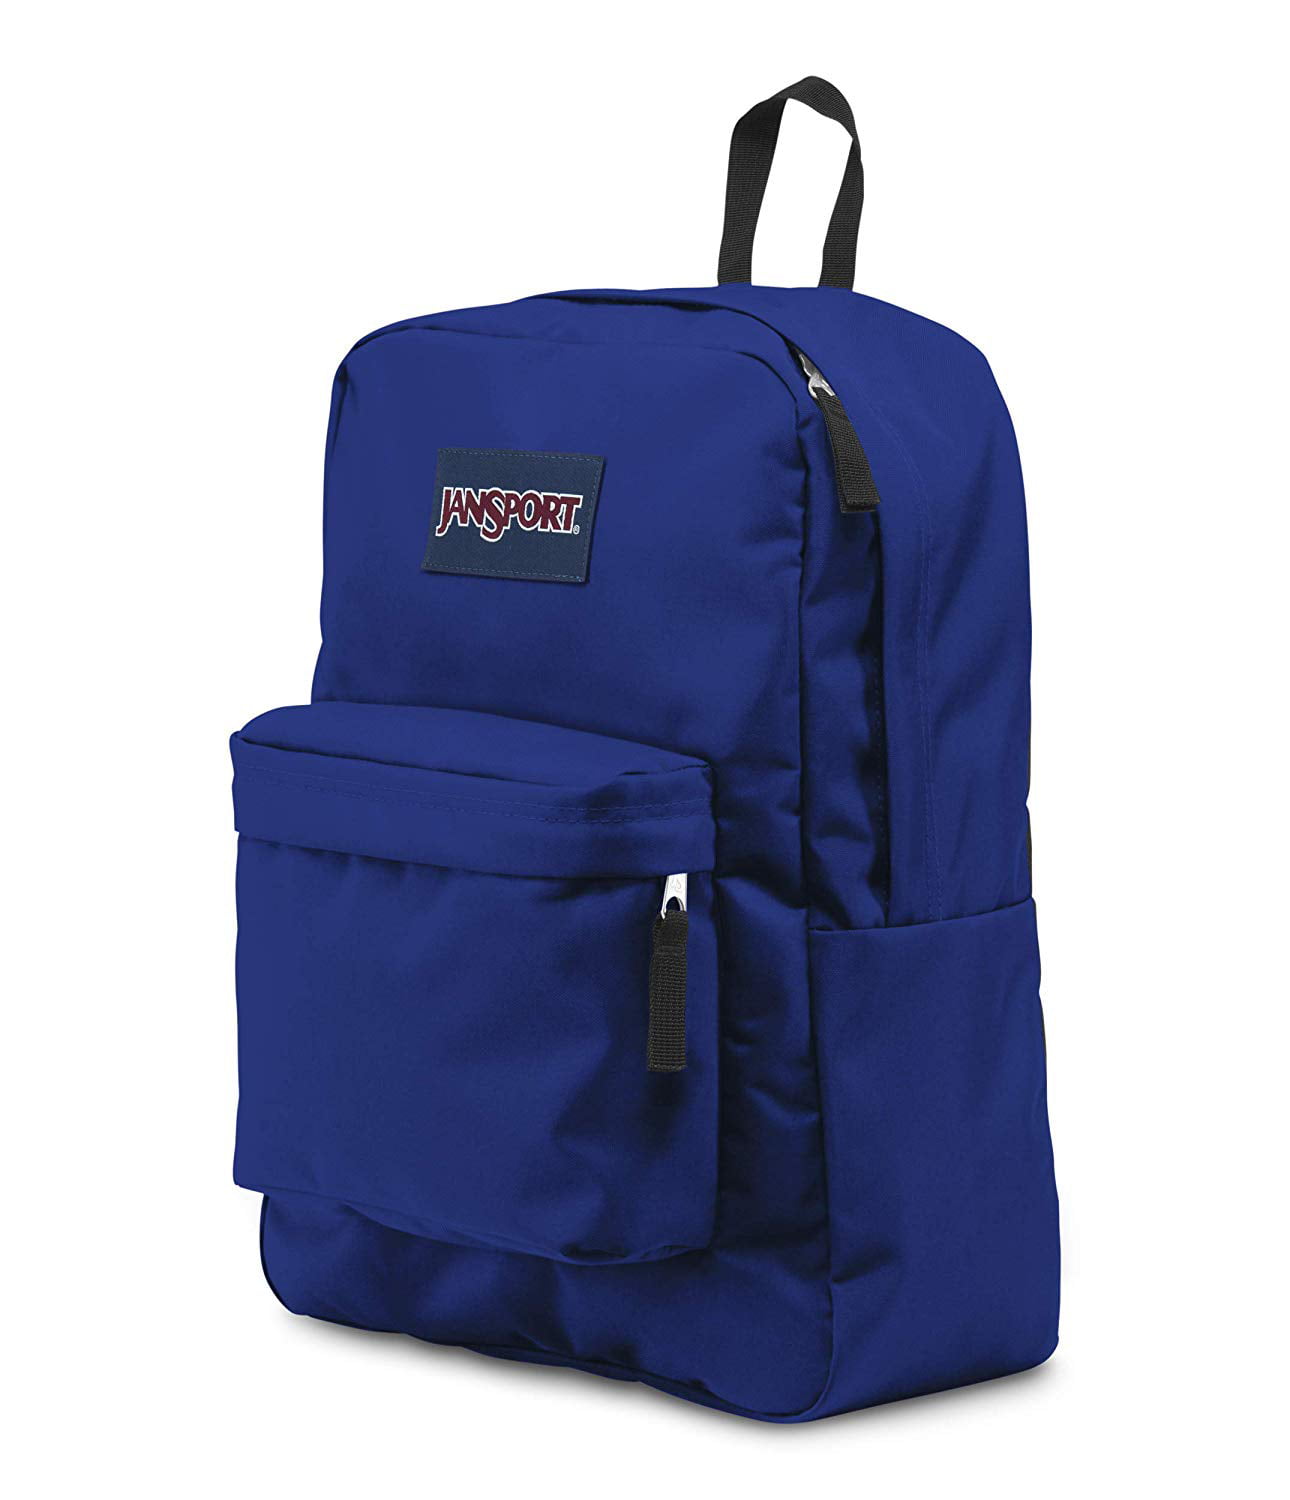 jansport superbreak backpack